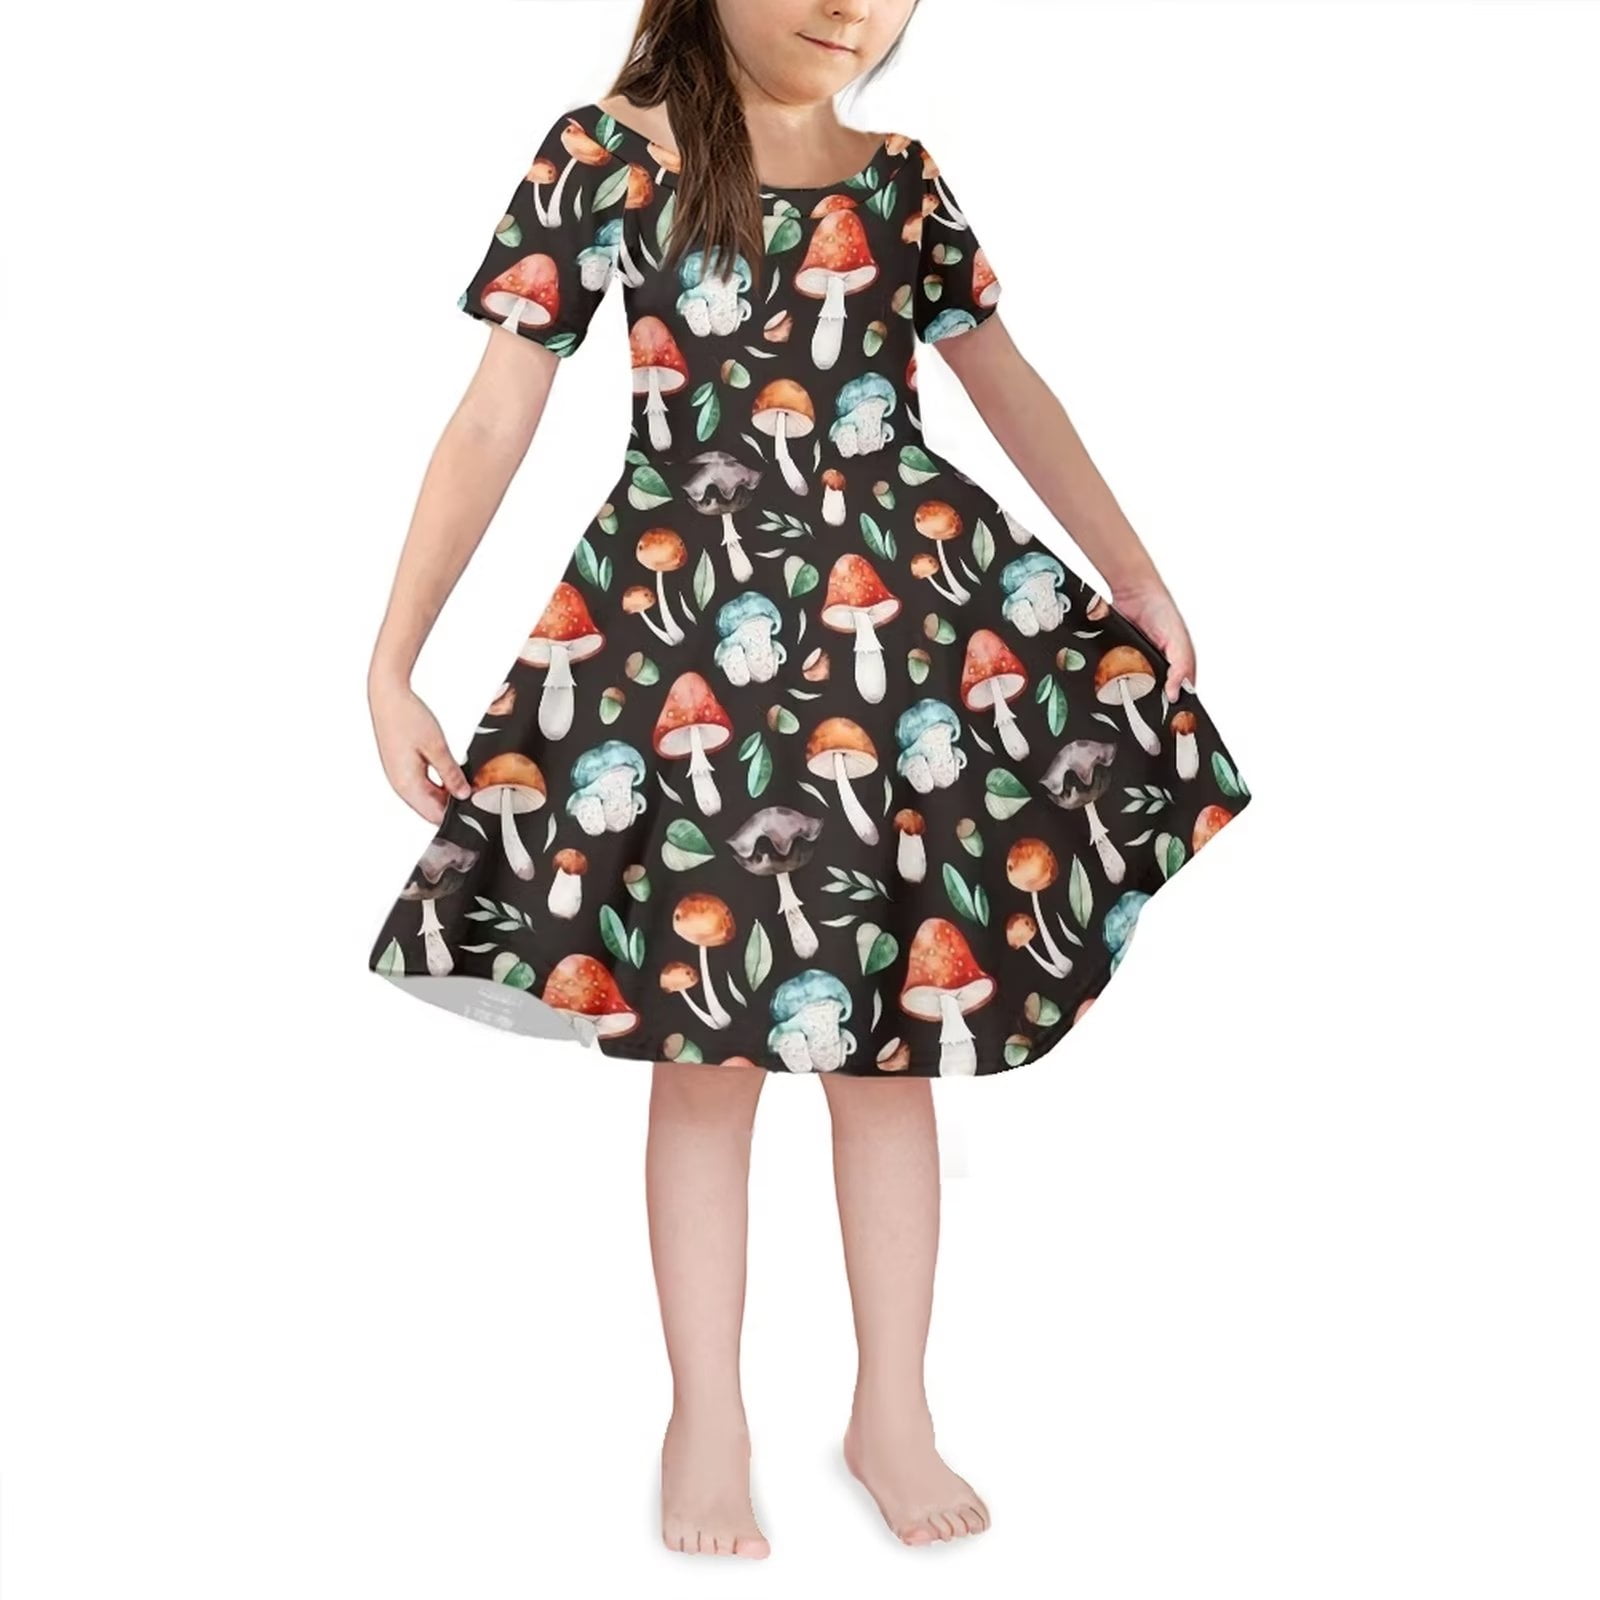 Dallas Little Girl Wedding Dress – Mia Bambina Boutique